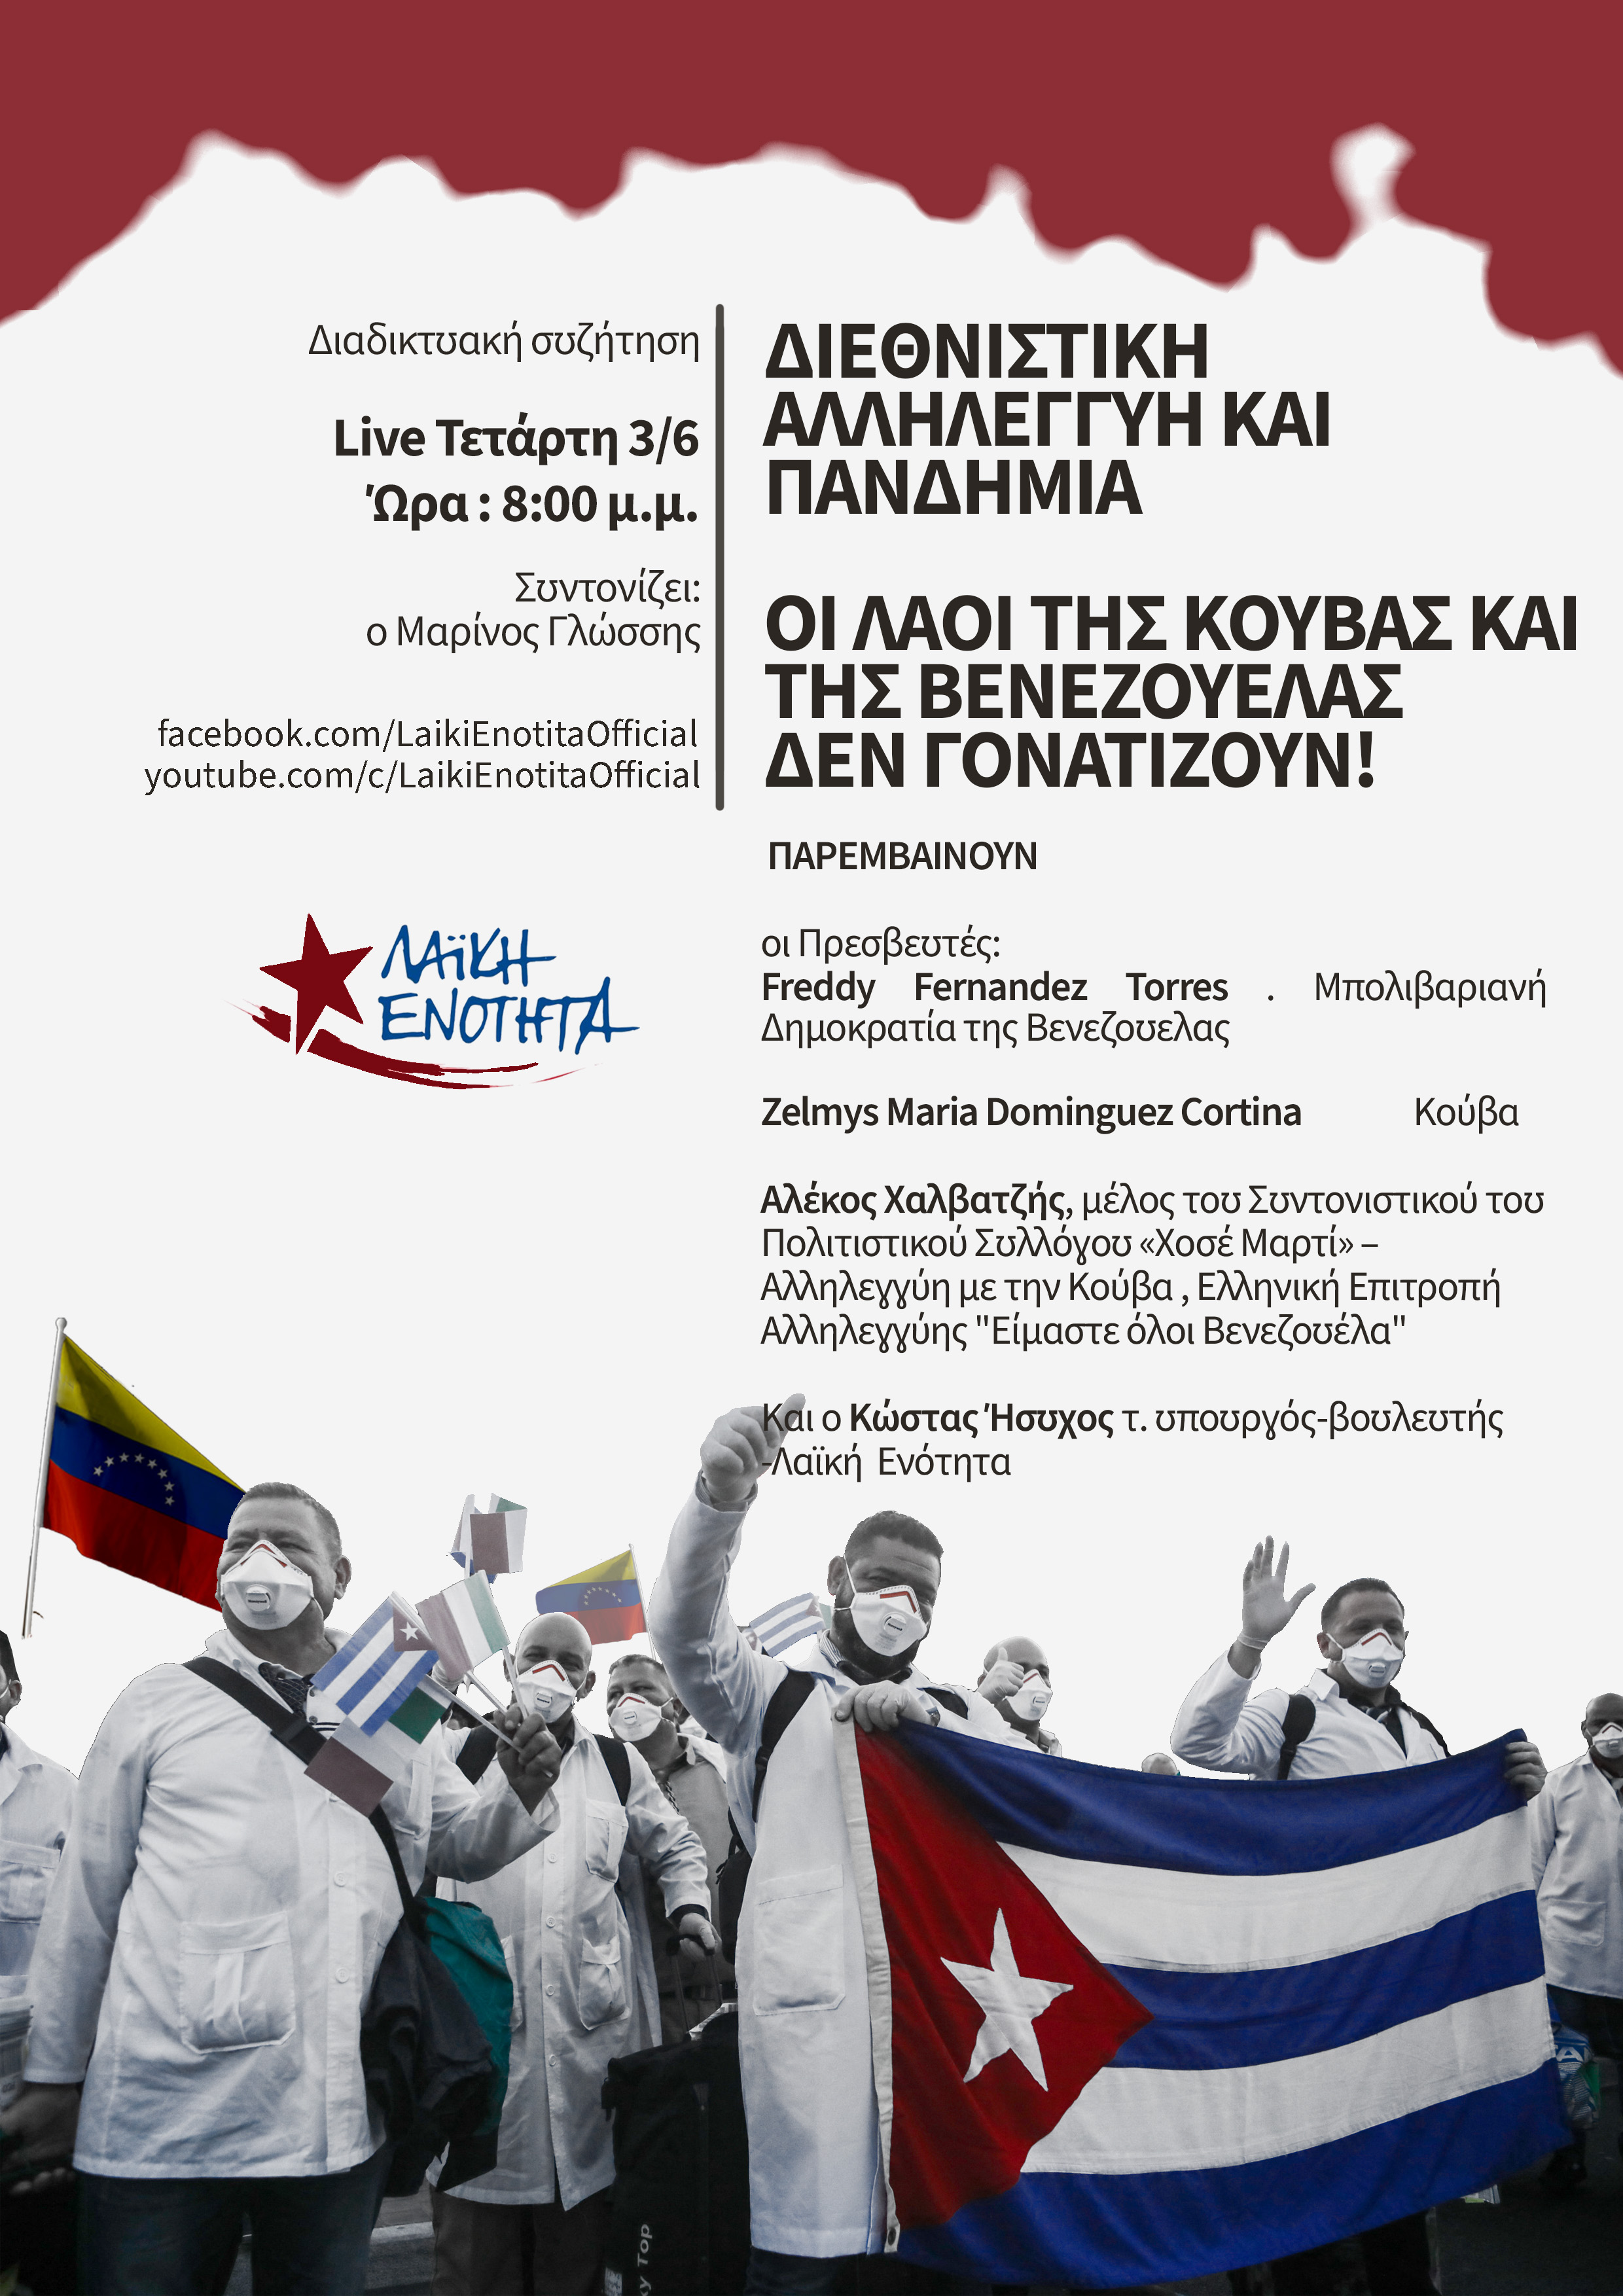 Διαδικτυακή συζήτηση της Λαϊκής Ενότητας την Τετάρτη 3/6 στις 8μμ: “Διεθνιστική αλληλεγγύη και πανδημία | Οι λαοί της Κούβας και της Βενεζουέλας δεν γονατίζουν!”